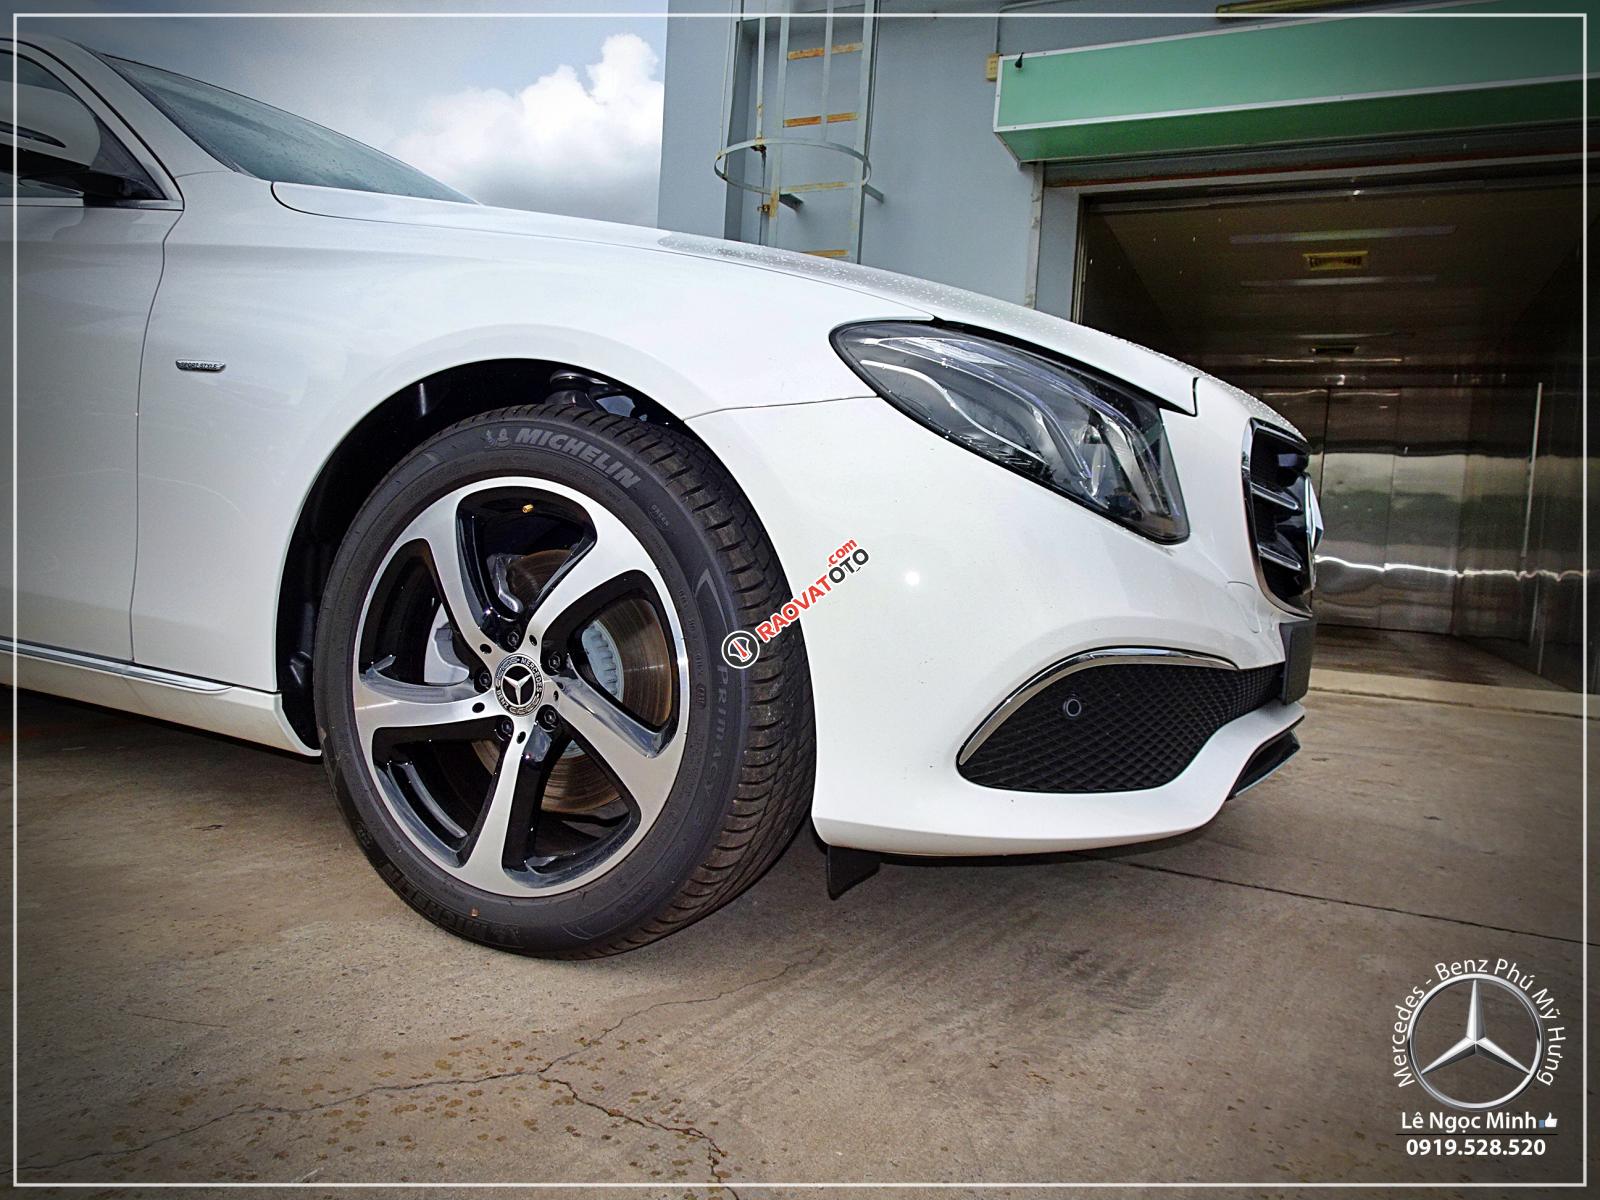 Cơ hội để sỡ hữu Mercedes-Benz E200 Sport new 2020 với giá bán tốt nhất ngay thời điểm này-4